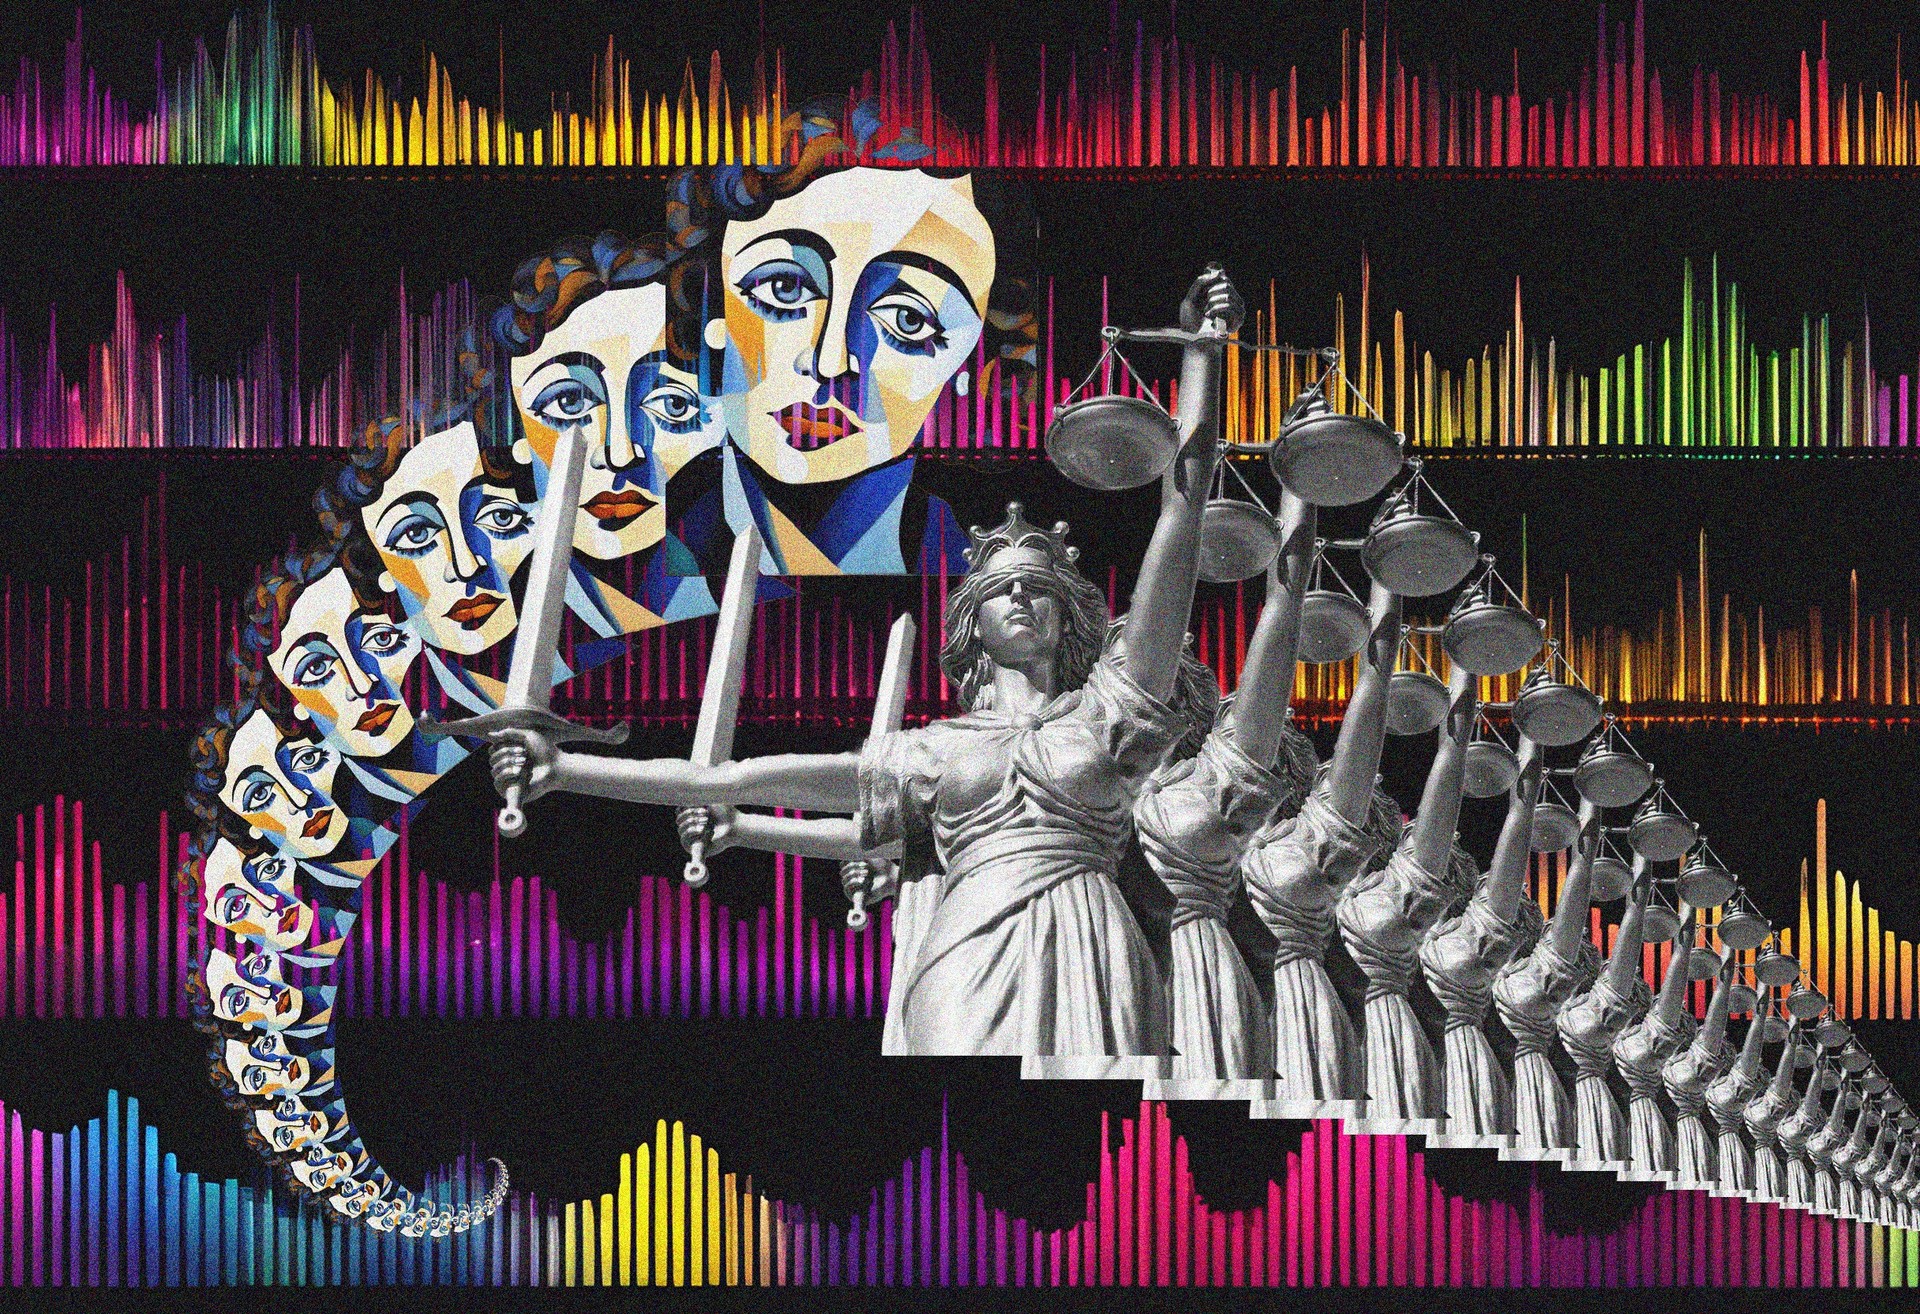 La justice et le faux Édith Piaf par Picasso